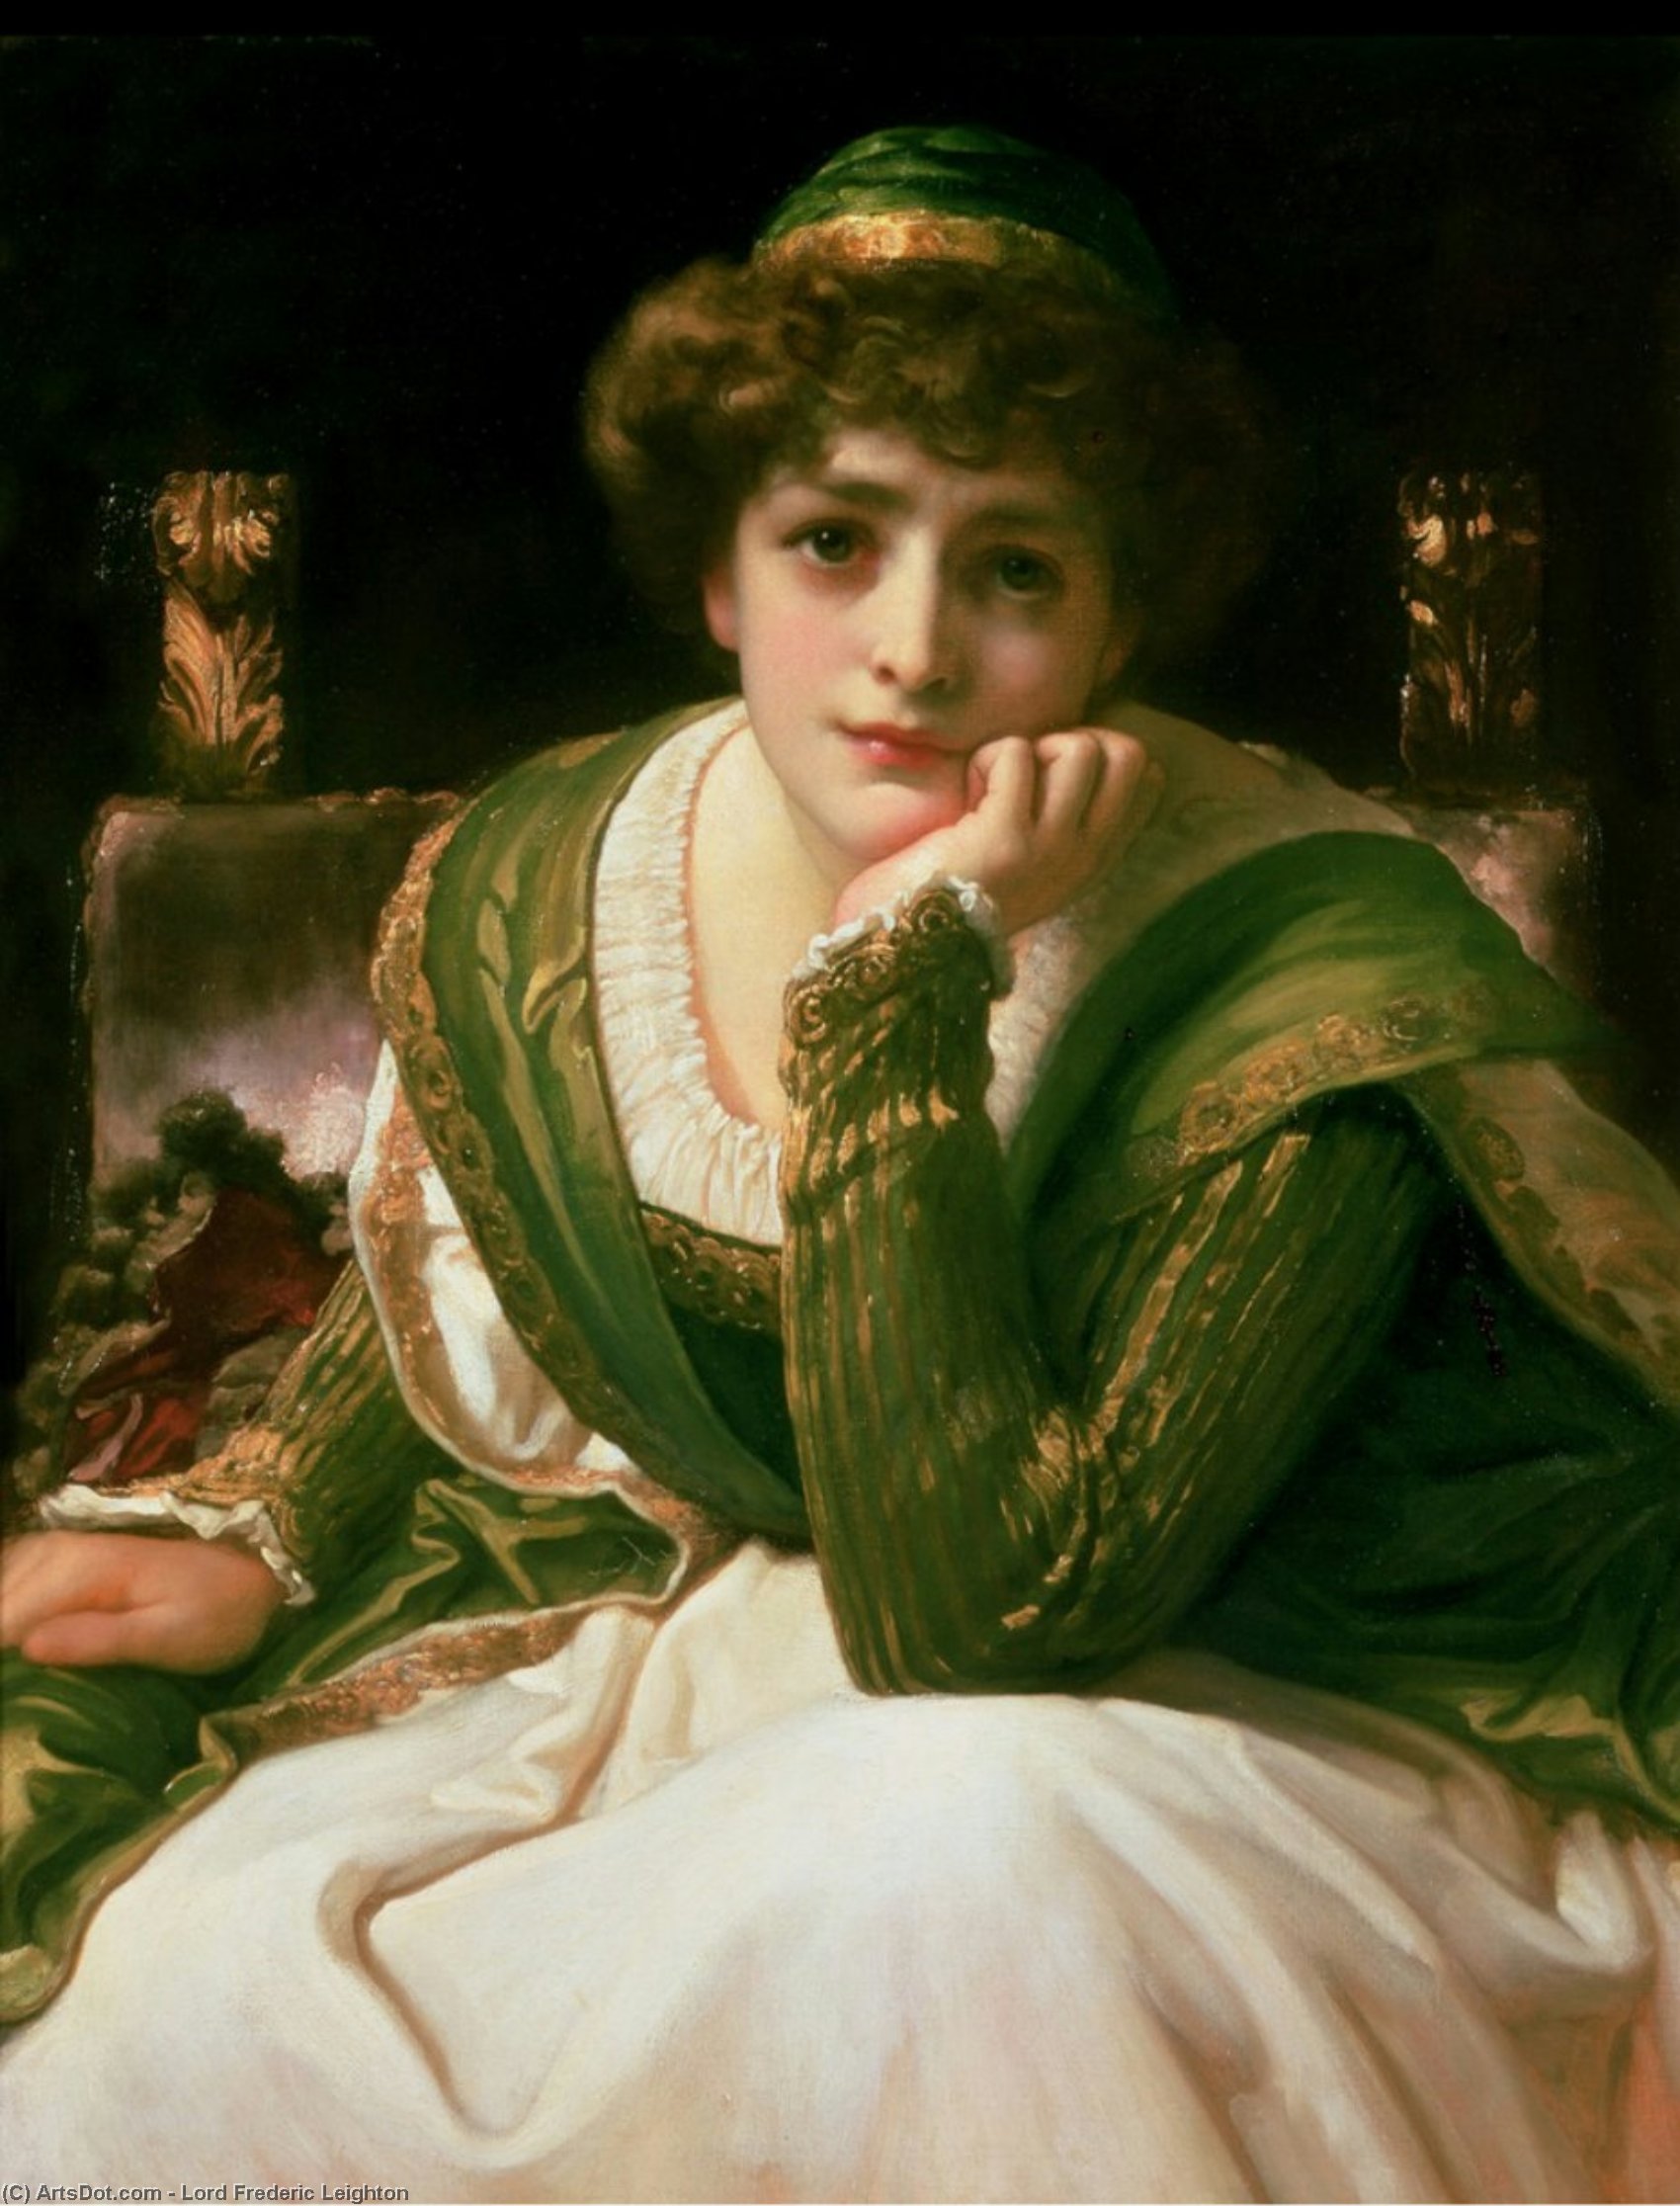 WikiOO.org - Encyclopedia of Fine Arts - Lukisan, Artwork Lord Frederic Leighton - Desdemona